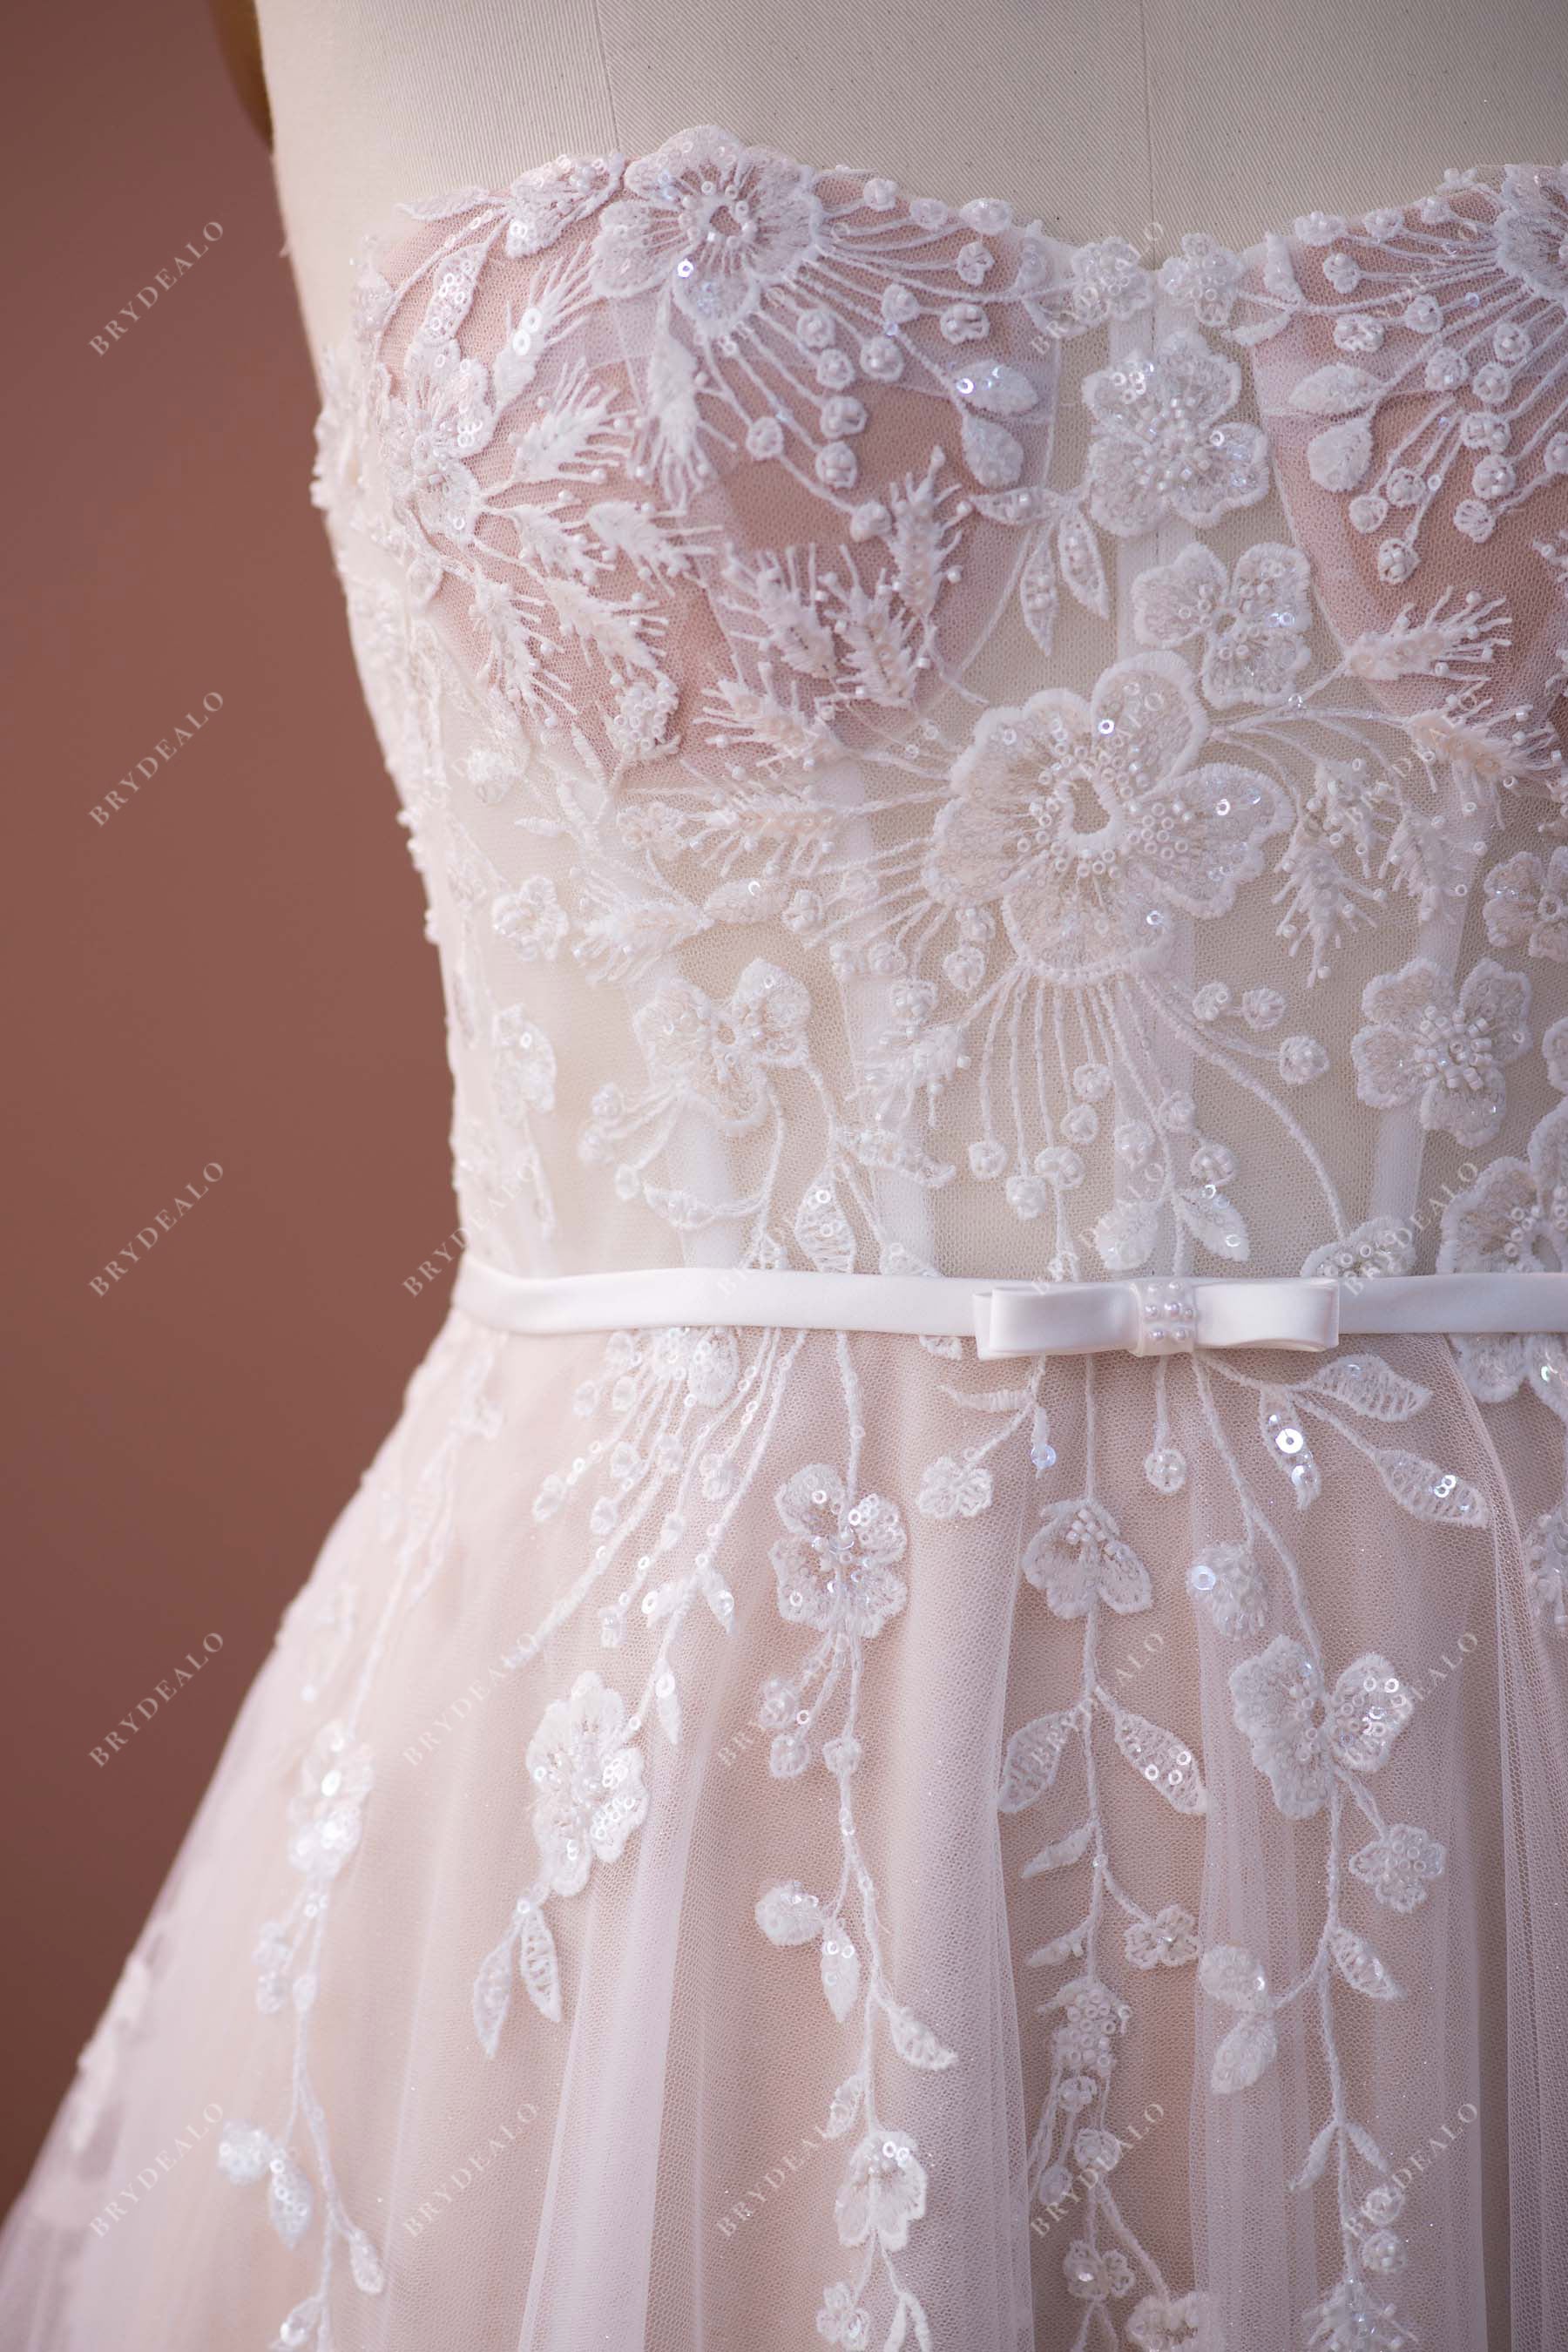 sweetheart corset wedding dress sample